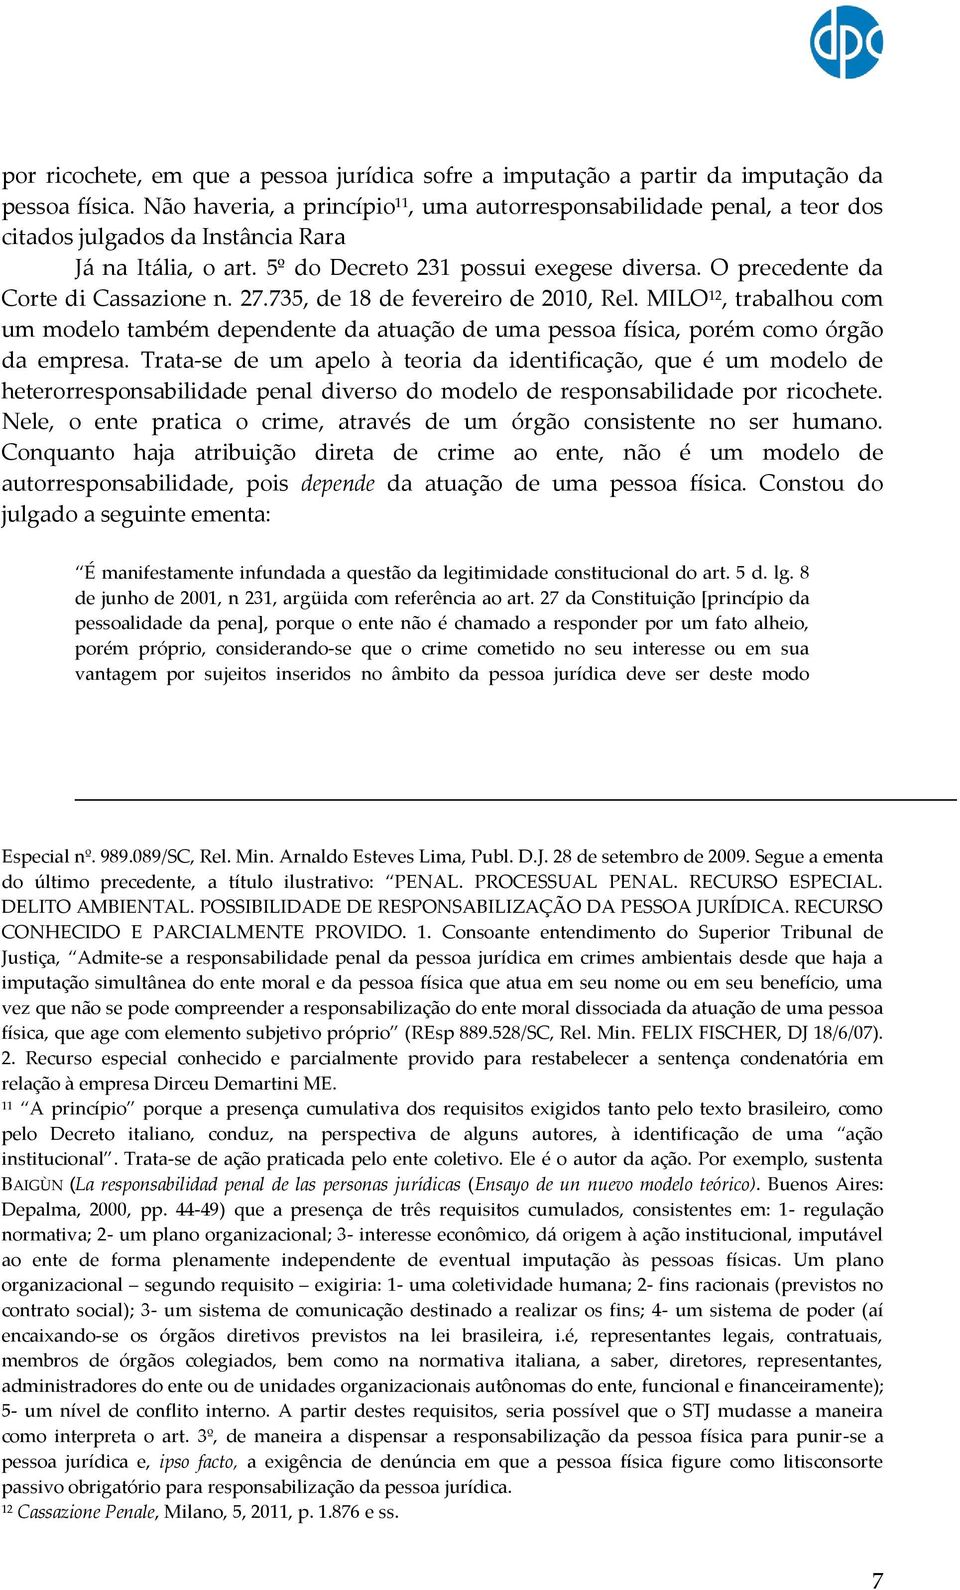 O precedente da Corte di Cassazione n. 27.735, de 18 de fevereiro de 2010, Rel. MILO 12, trabalhou com um modelo também dependente da atuação de uma pessoa física, porém como órgão da empresa.